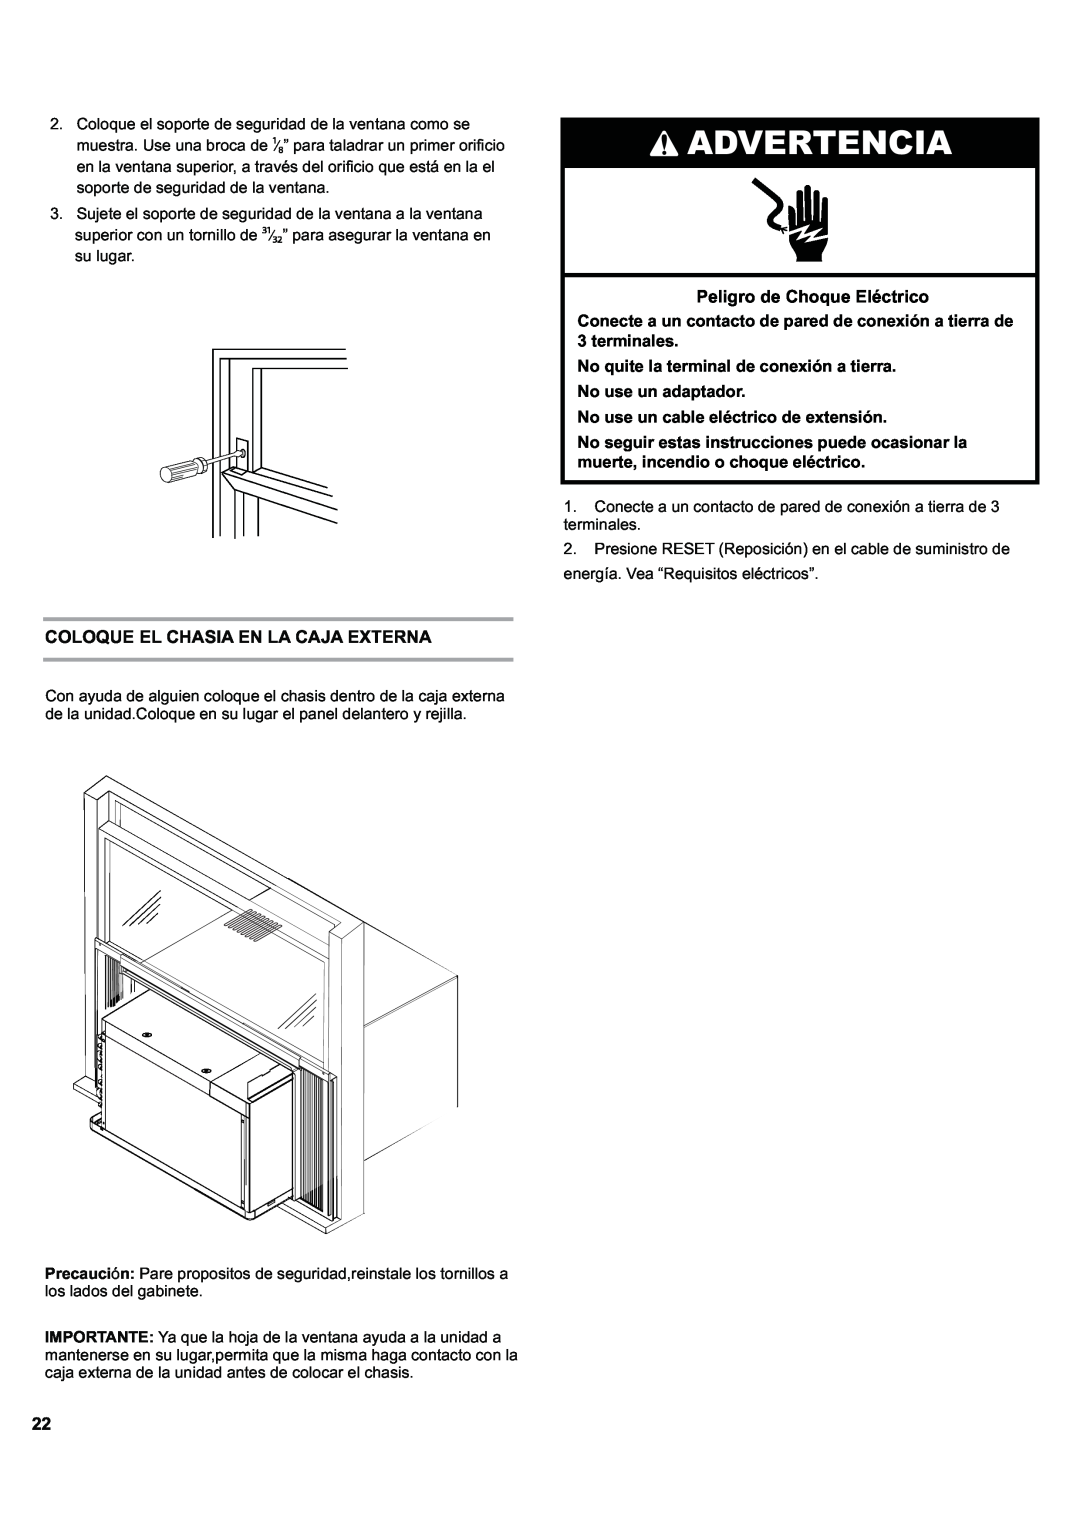 Haier ESA424J-L manual Advertencia, Coloque El Chasia En La Caja Externa, Peligro de Choque Eléctrico 